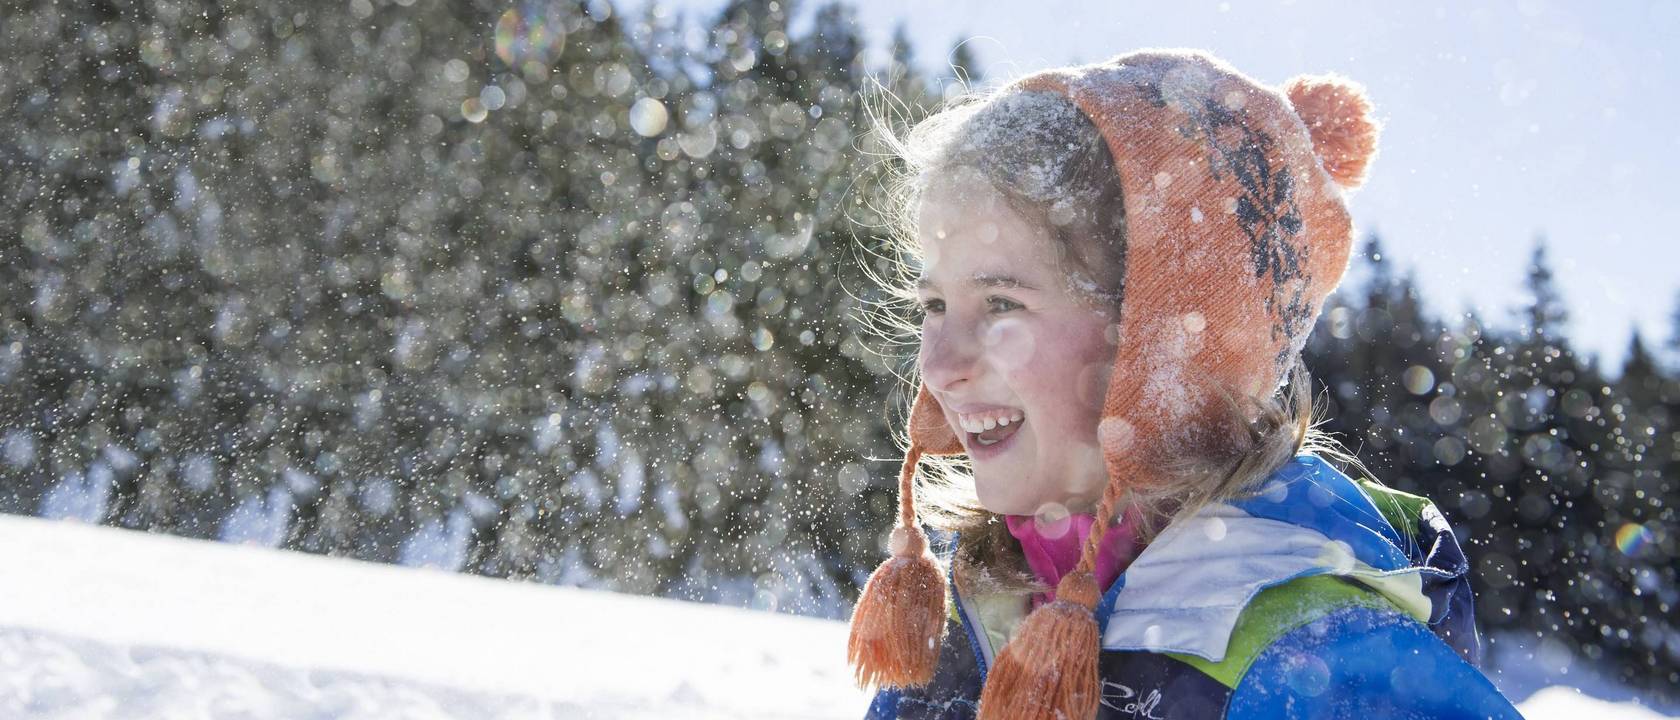 Family hotel in montagna d’inverno: 10 consigli per voi